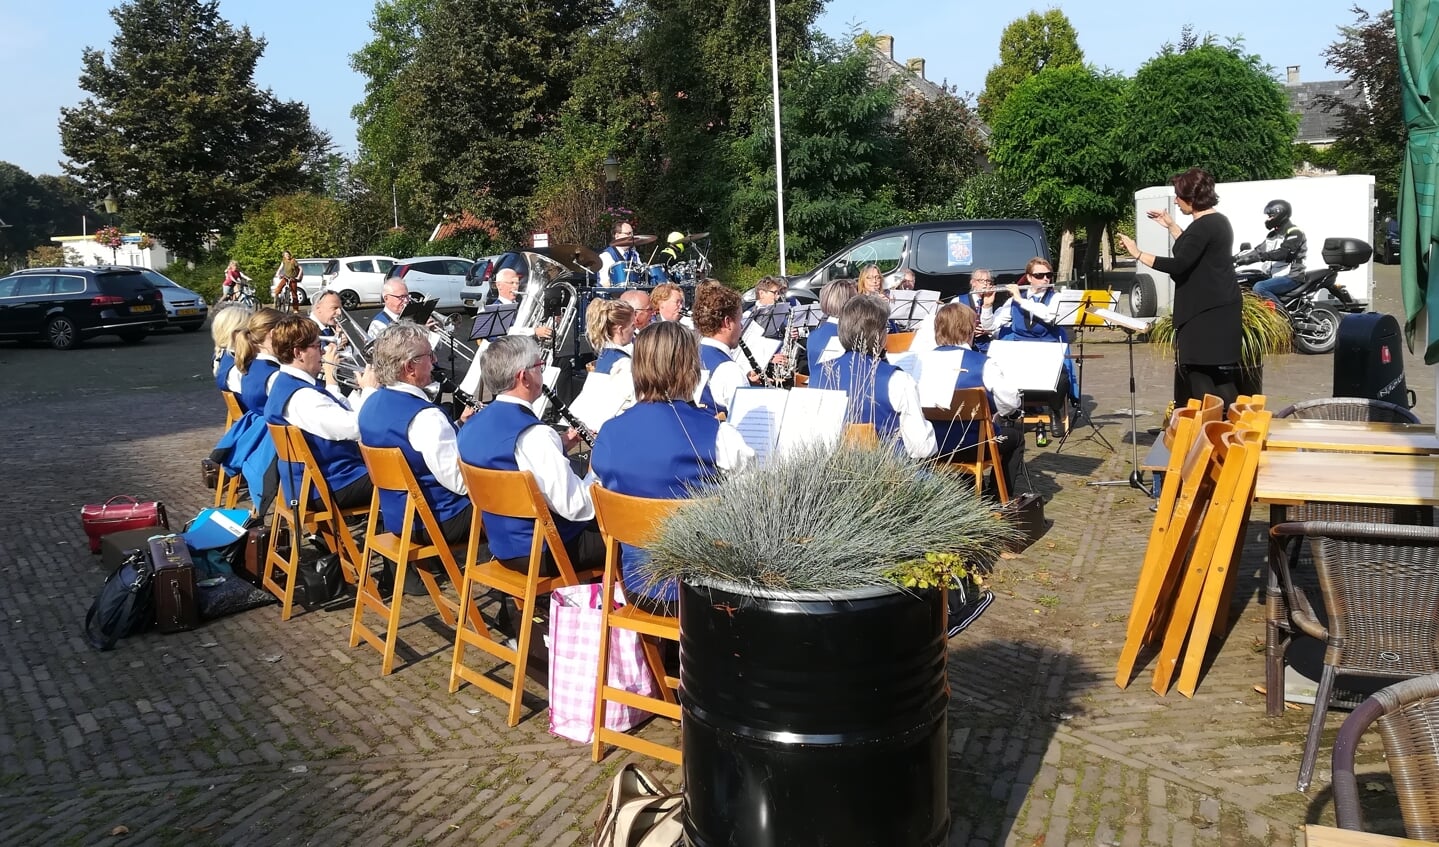 De Kleintje Kermis concertjes van Nieuw Leven starten op het Marktplein in Steenderen. Foto: Maria Schotman